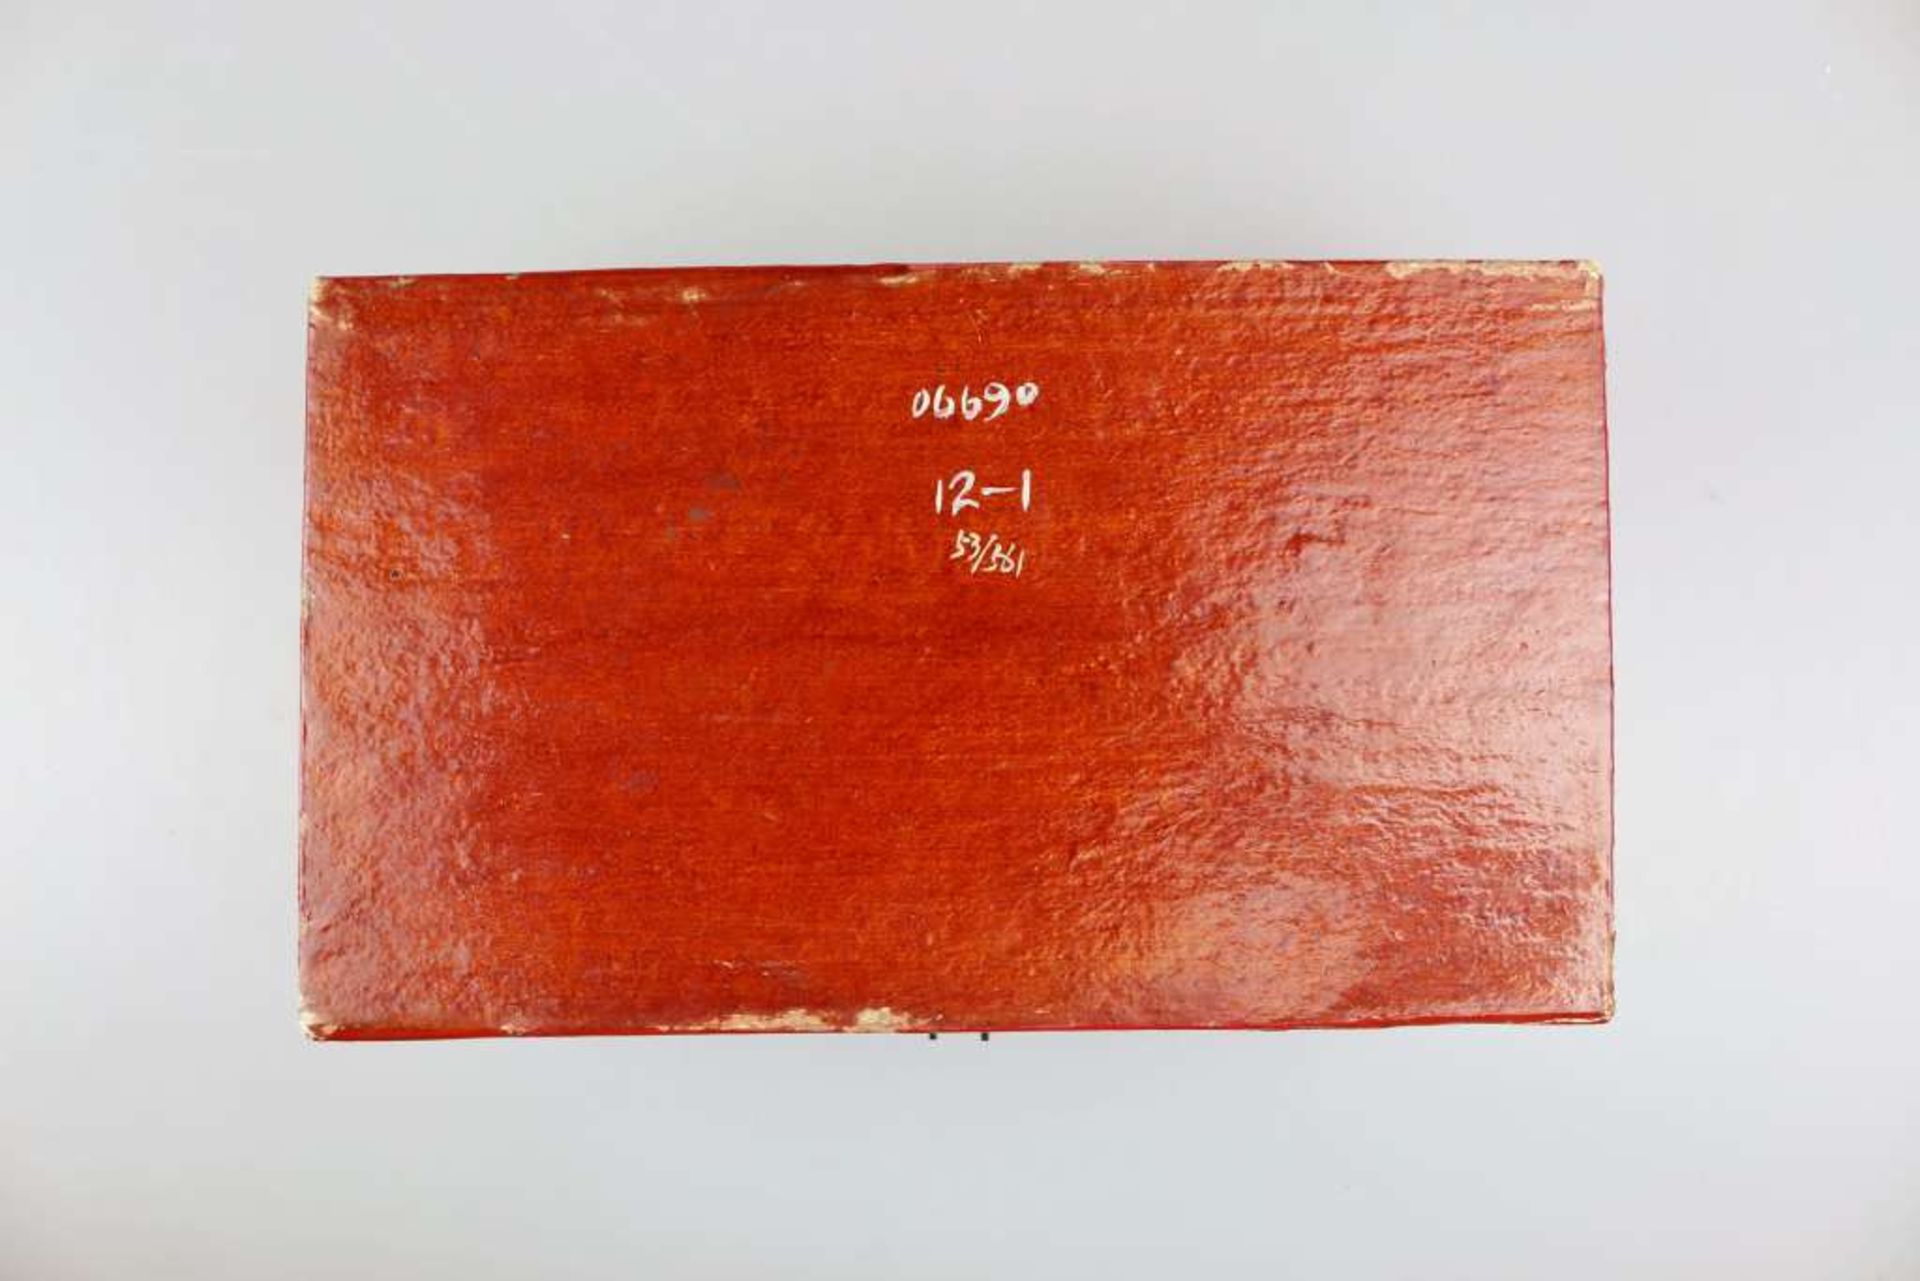 China, Lacktruhe, 19./20. Jh., Holzkern mit dünner Lederbespannung, außen anschließend lackiert, - Bild 4 aus 4